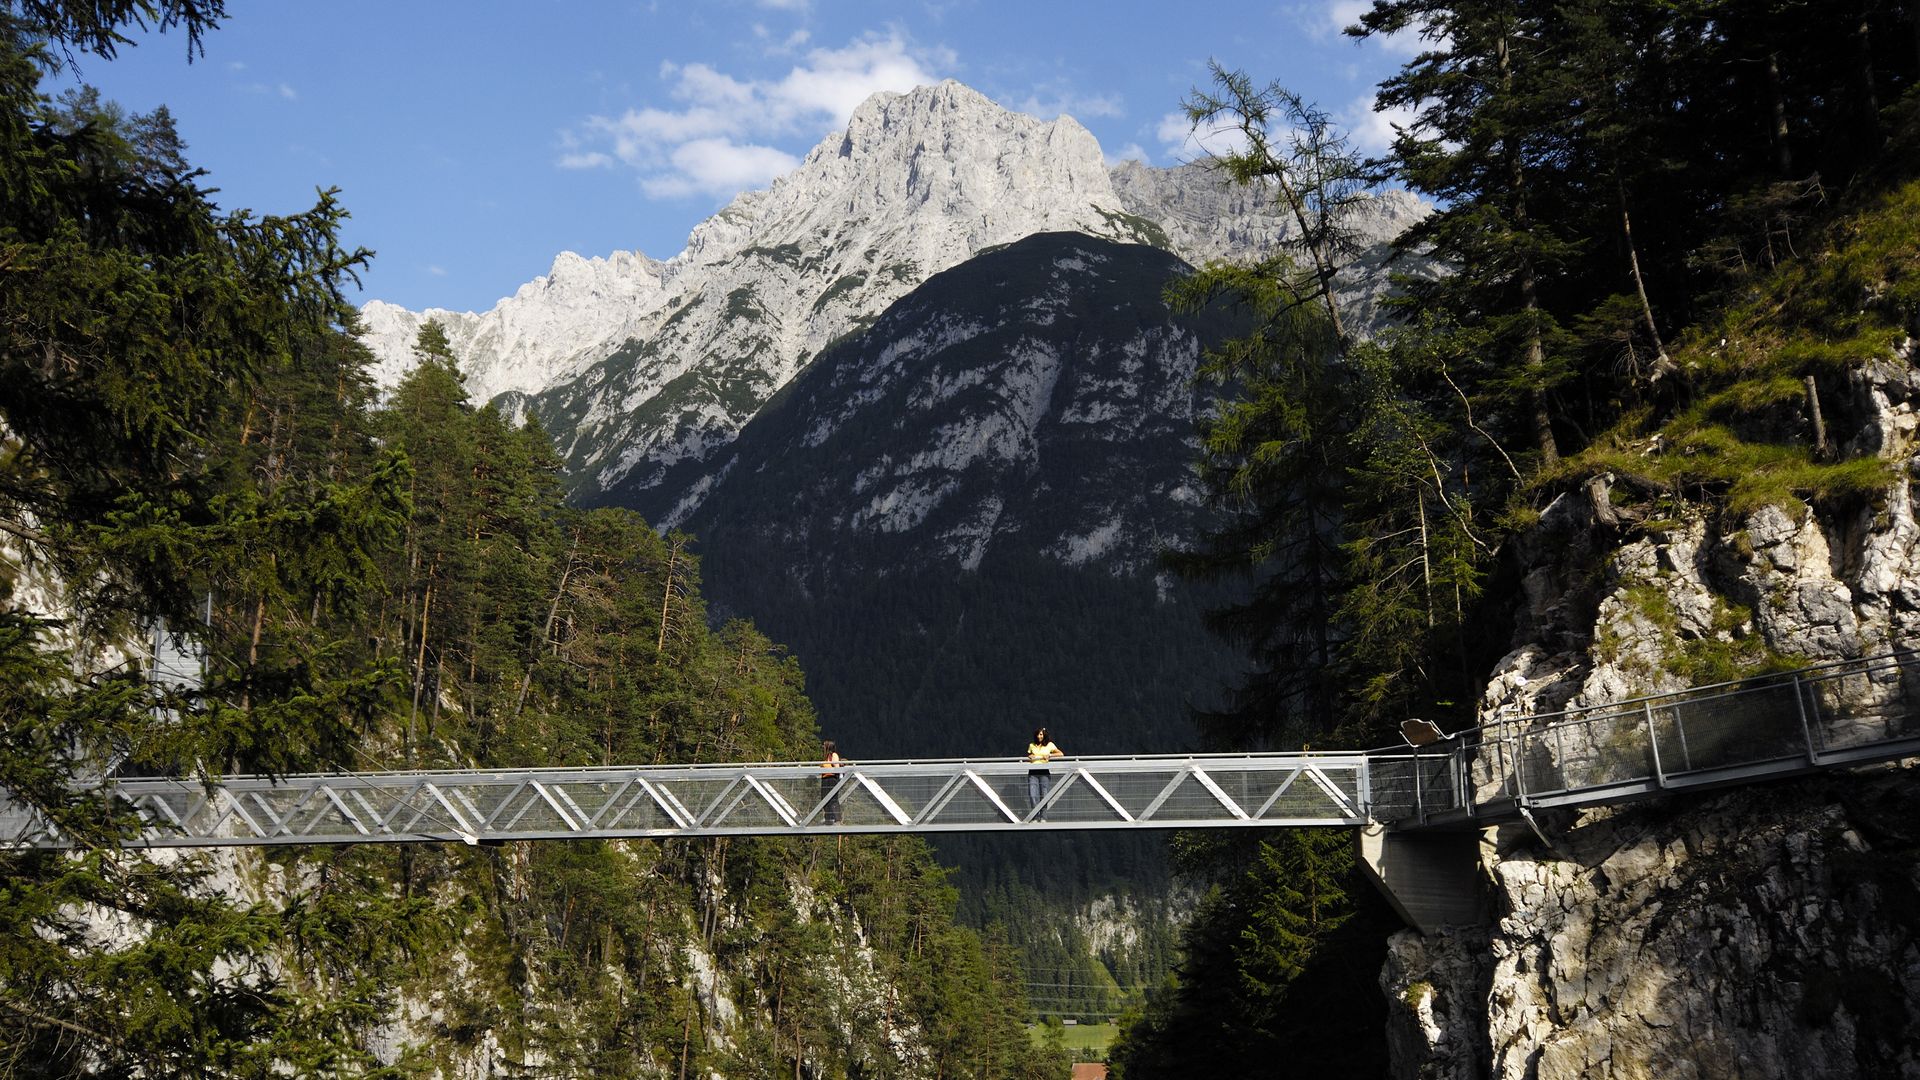 Eine silberne Brücke führt über eine Schlucht, die Geisterklamm. Im Hintergrund ragt ein felsiger Berg empor.